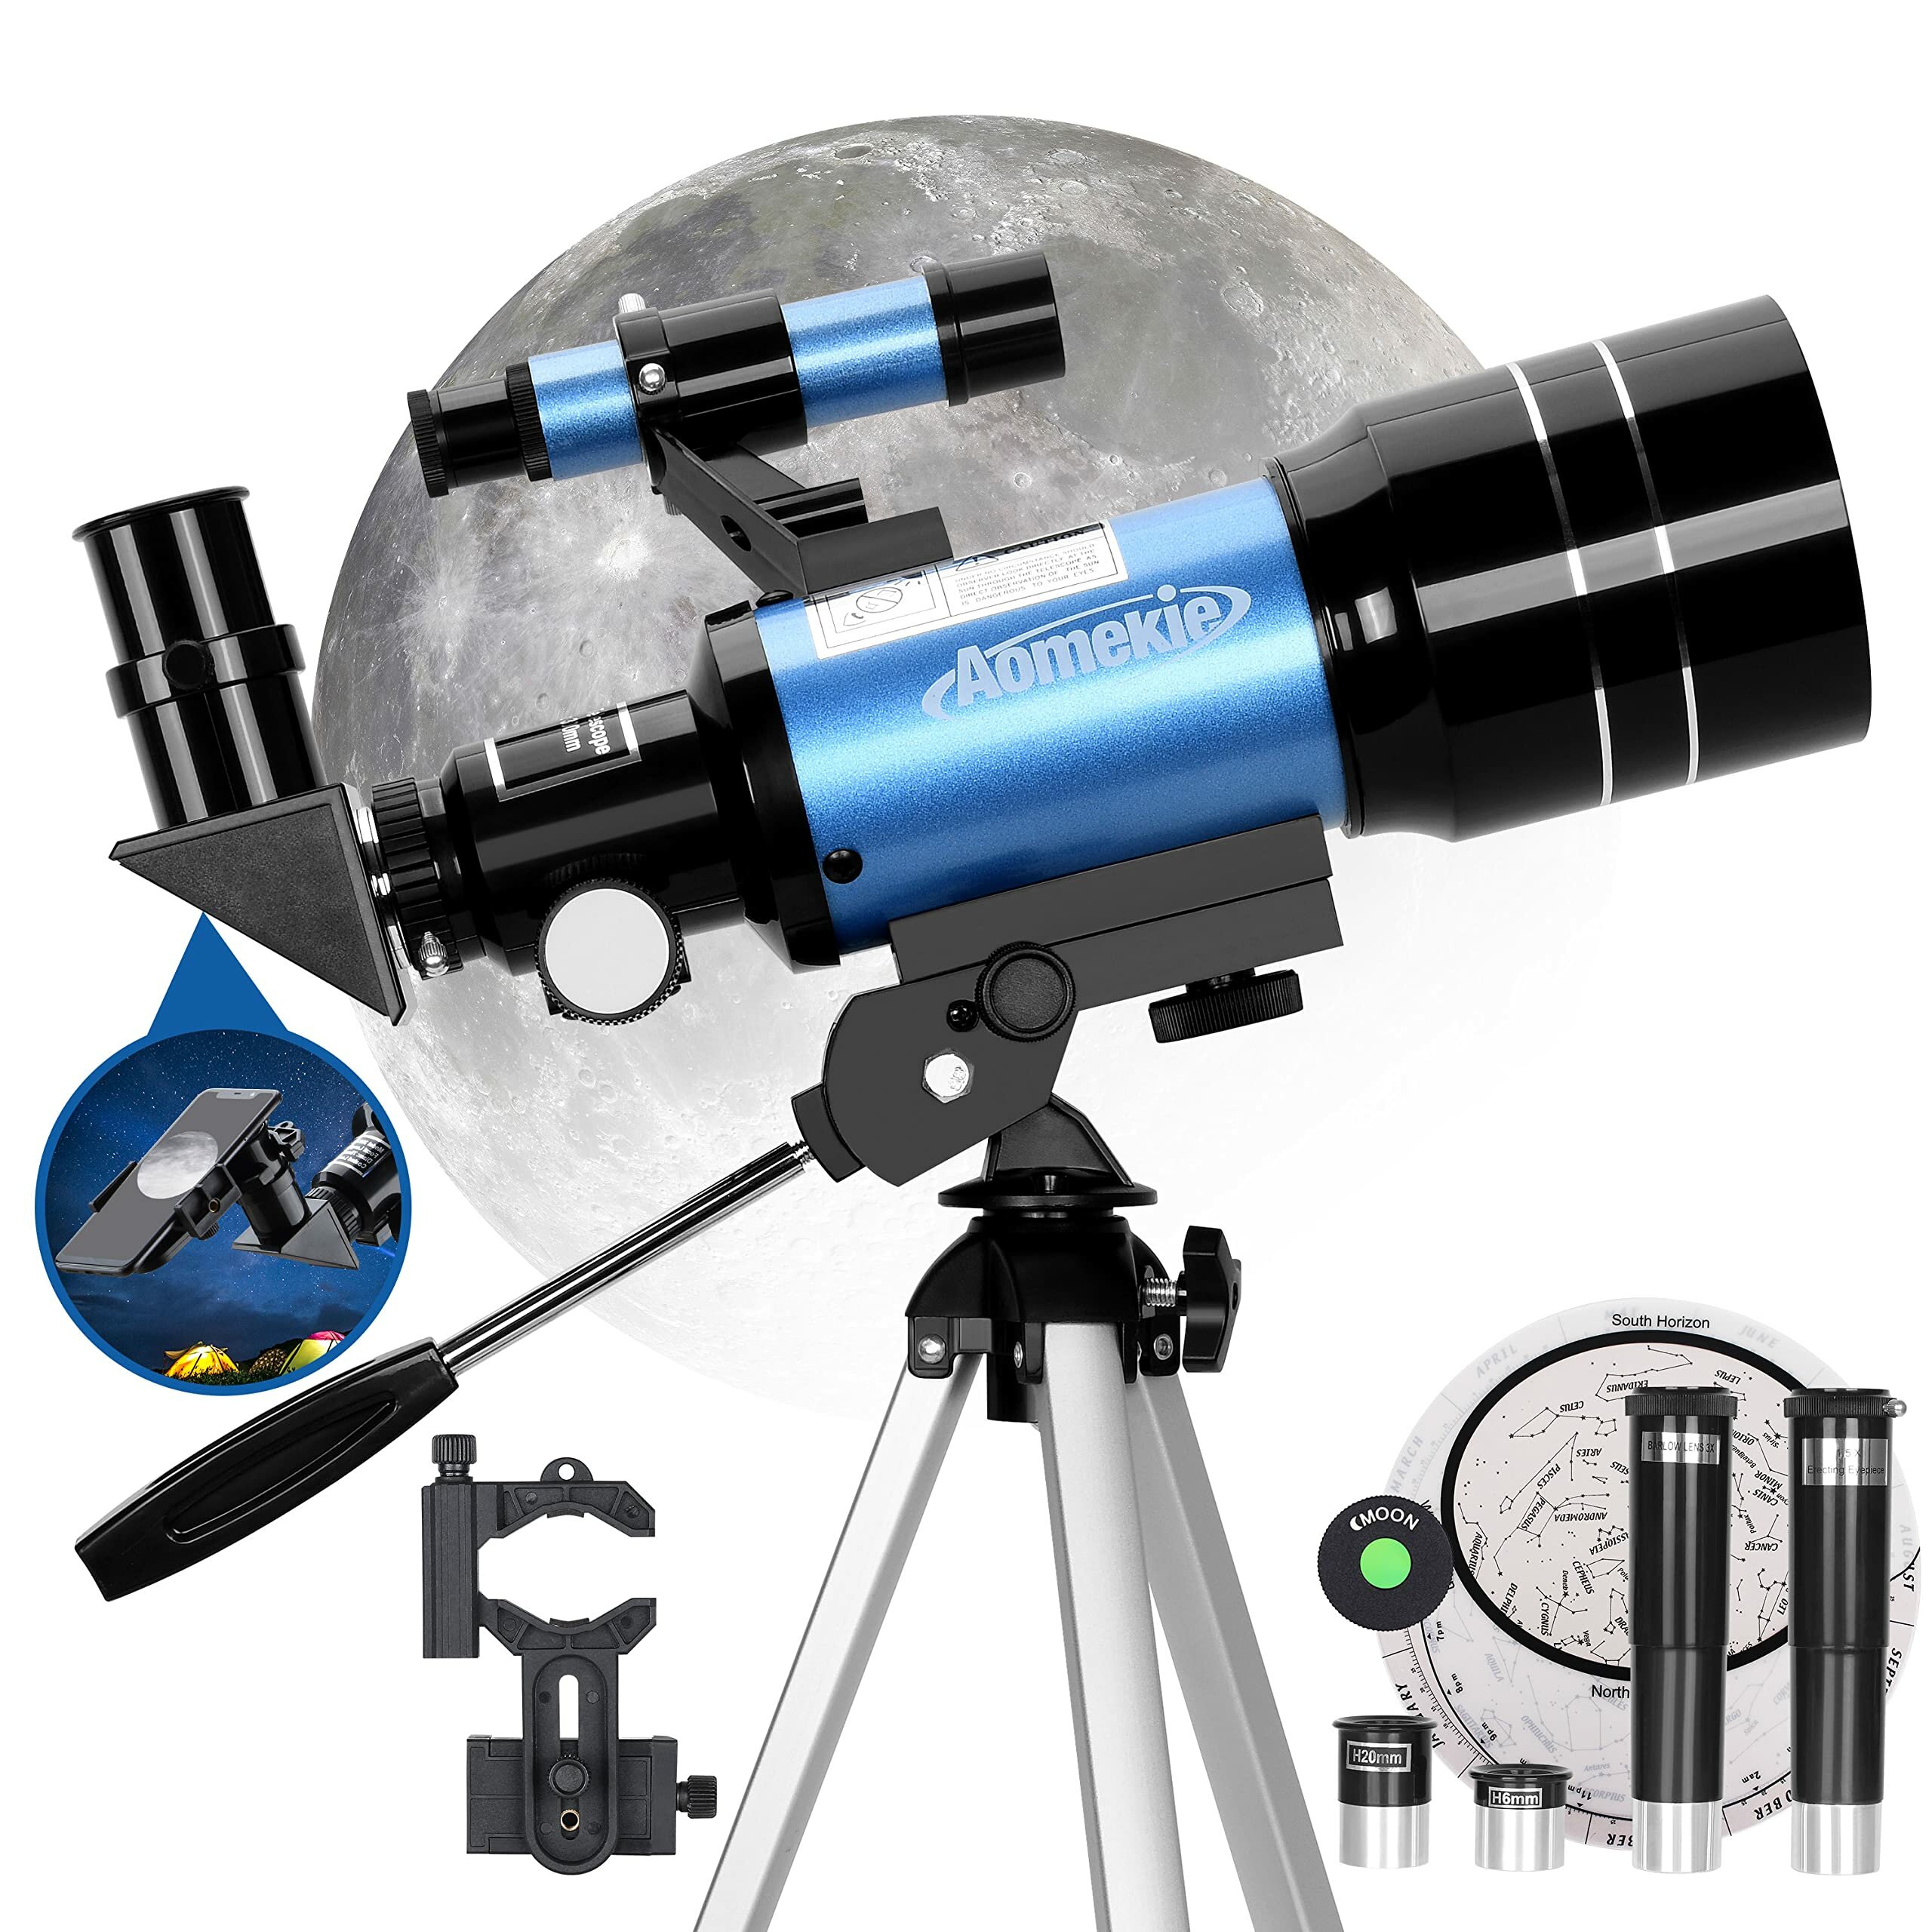 [US Direct] Teleskop astronomiczny AOMEKIE AO2001 70mm dla dzieci 150X Potężny teleskop astronomiczny z adapterem do smartfona,statywem,soczewką Barlowa i wyszukiwaczem dla początkujących i pasjonatów